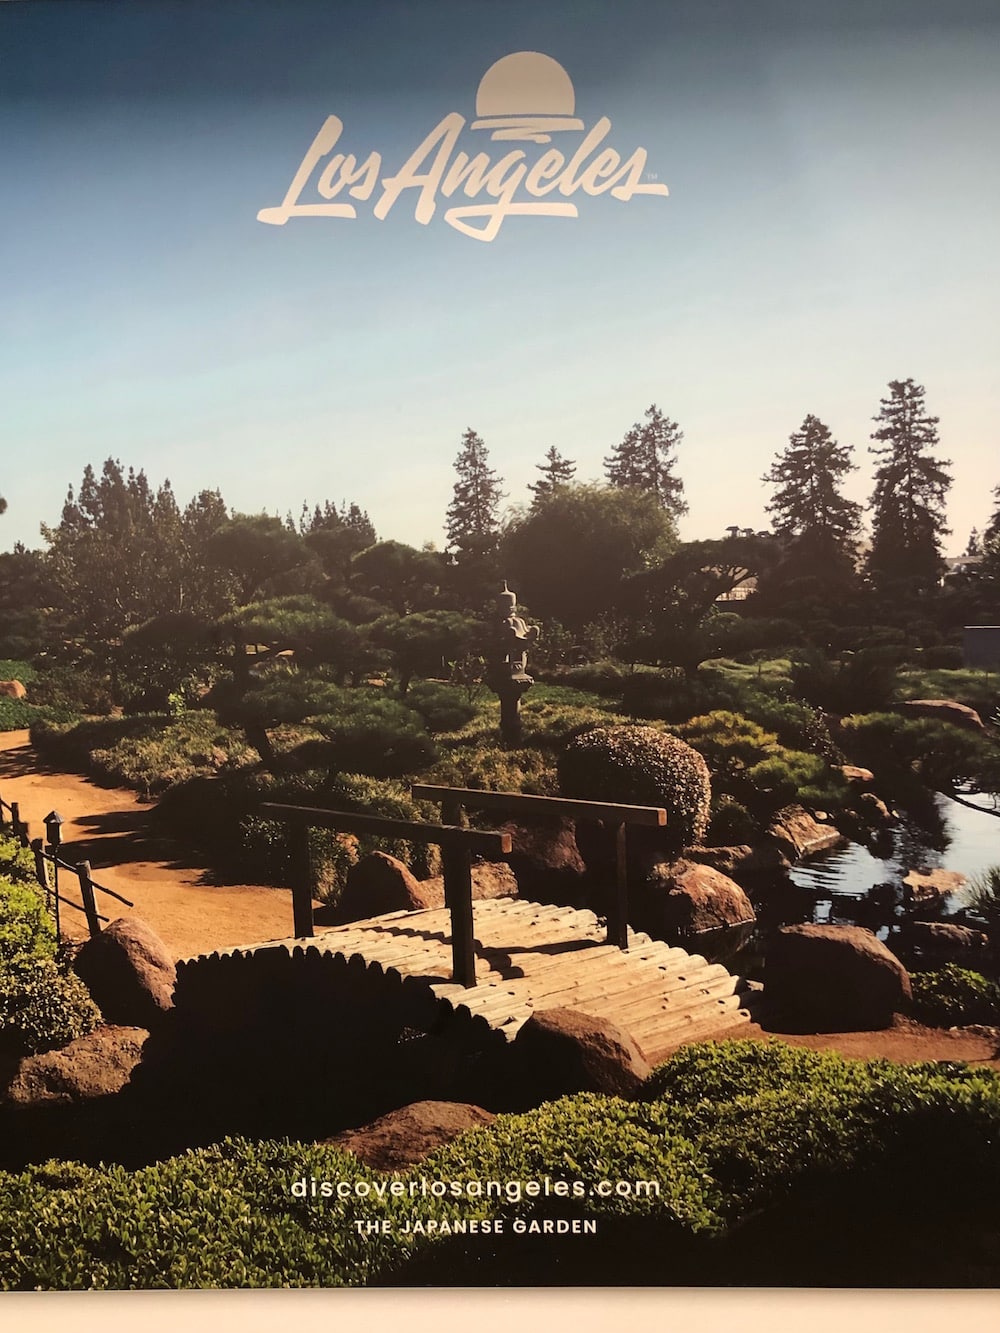 Neues Logo für Los Angeles von Shepard Fairey und House Industries: The Japanese Garden